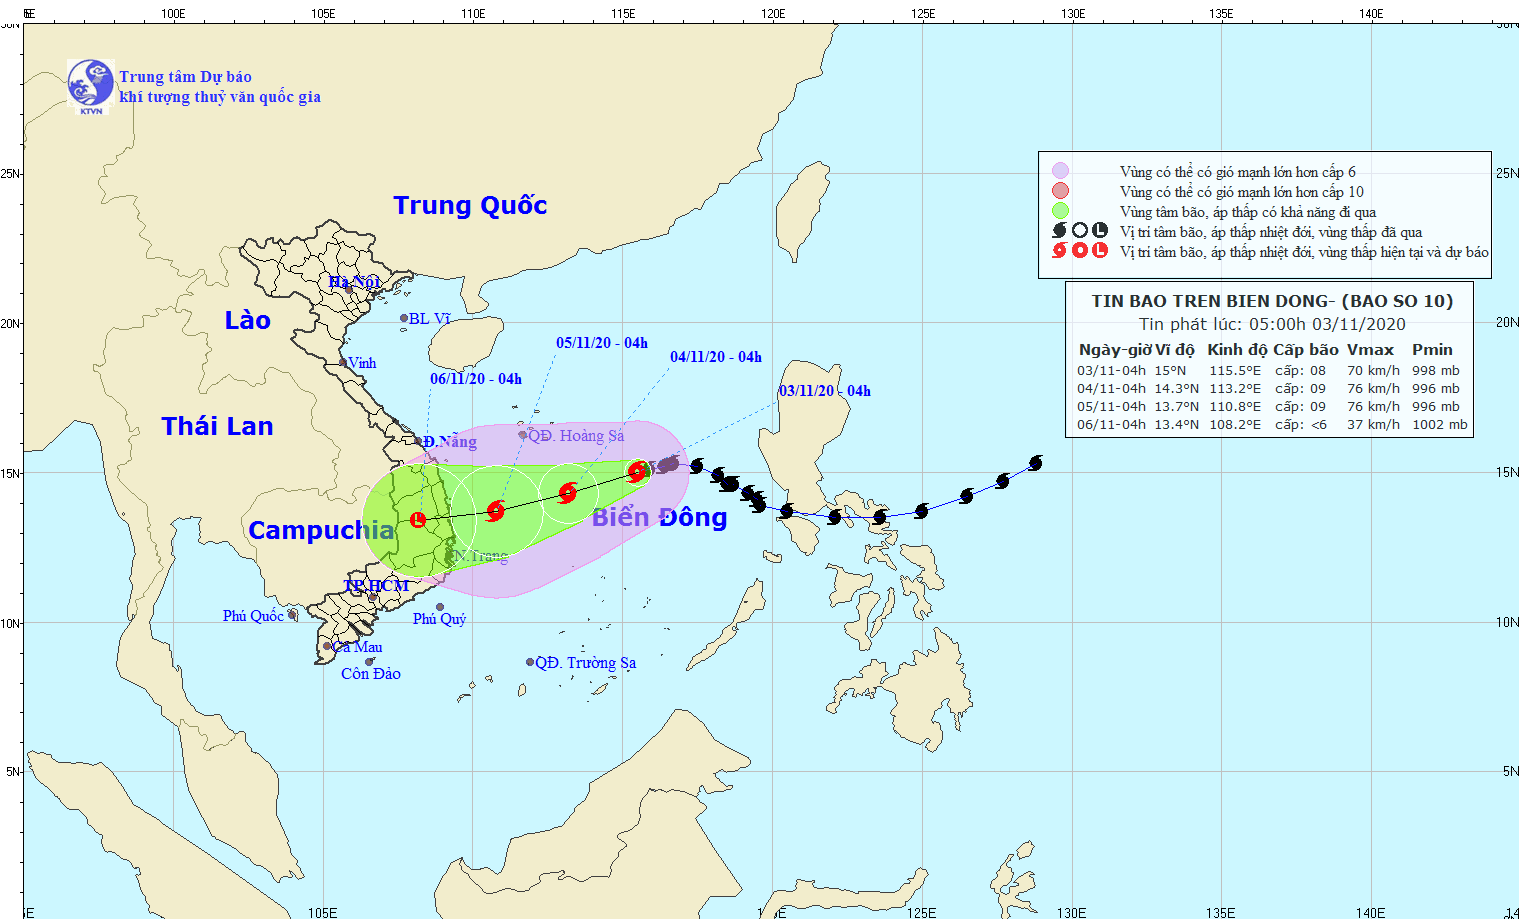 Từ Thừa Thiên Huế đến Quảng Ngãi sẽ hứng chịu mưa lớn 300-400mm do hoàn lưu bão số 10 - Ảnh 1.